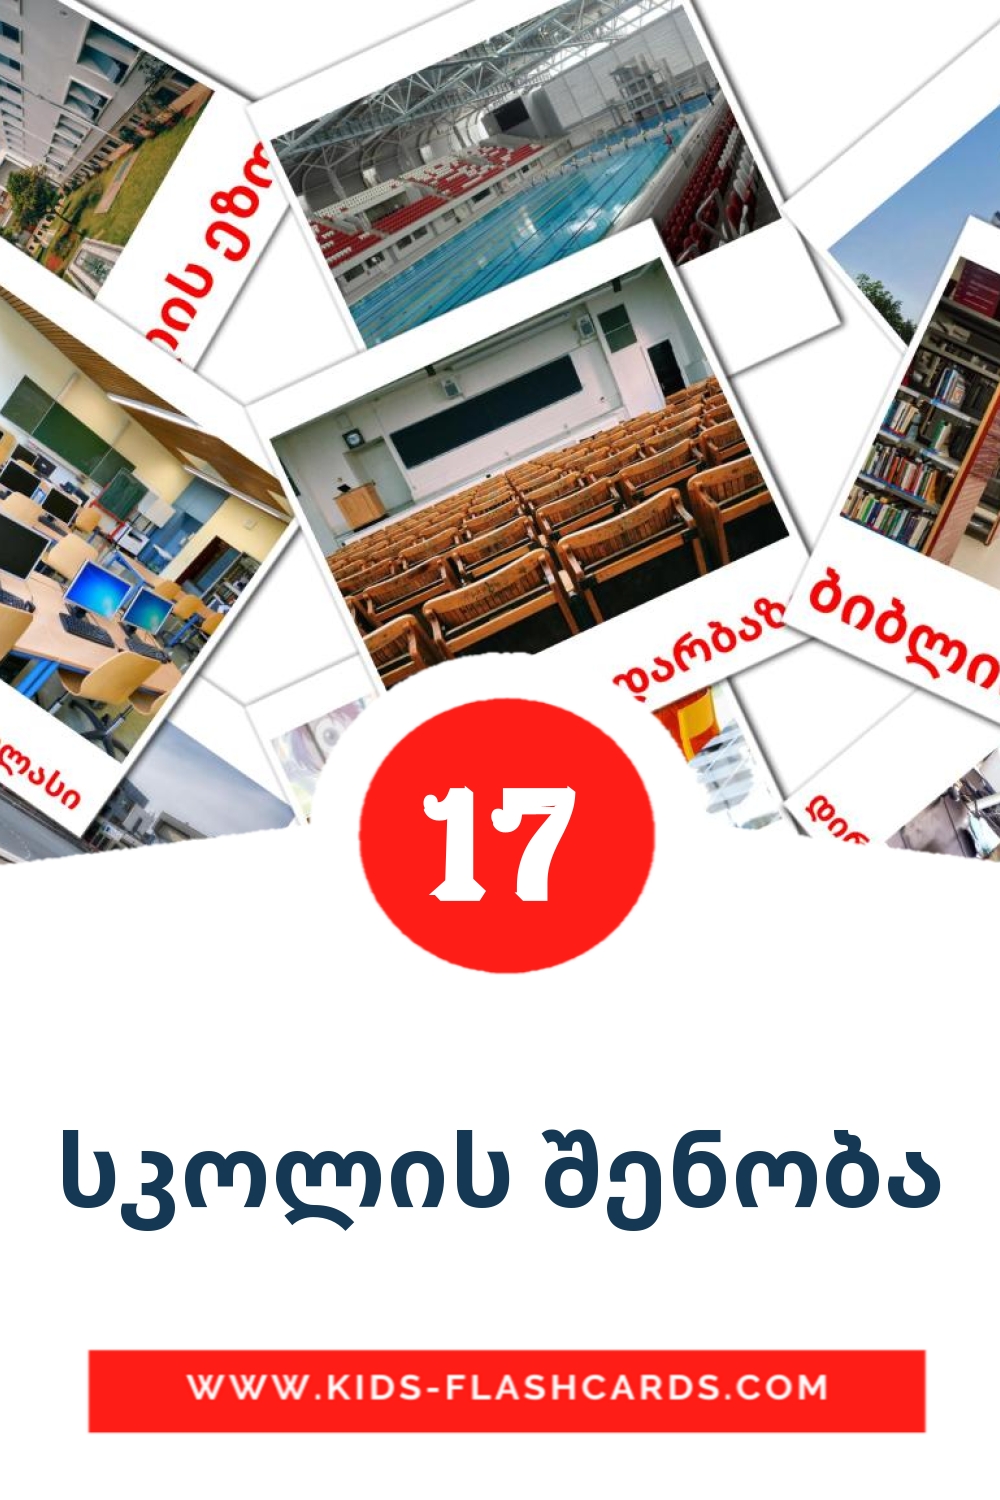 17 Cartões com Imagens de სკოლის შენობა para Jardim de Infância em georgiano